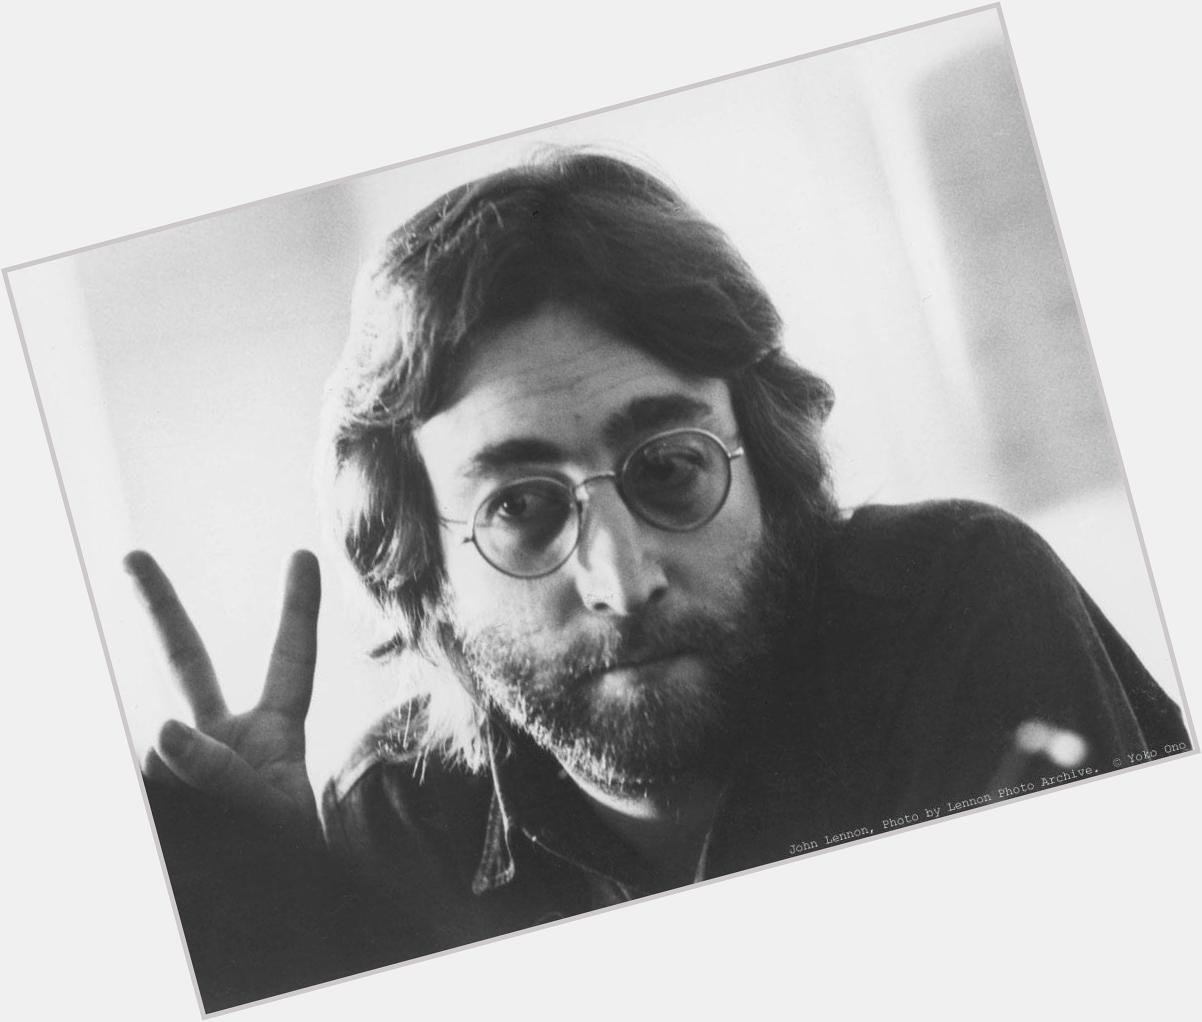 Happy Birthday to the great. John Lennon 